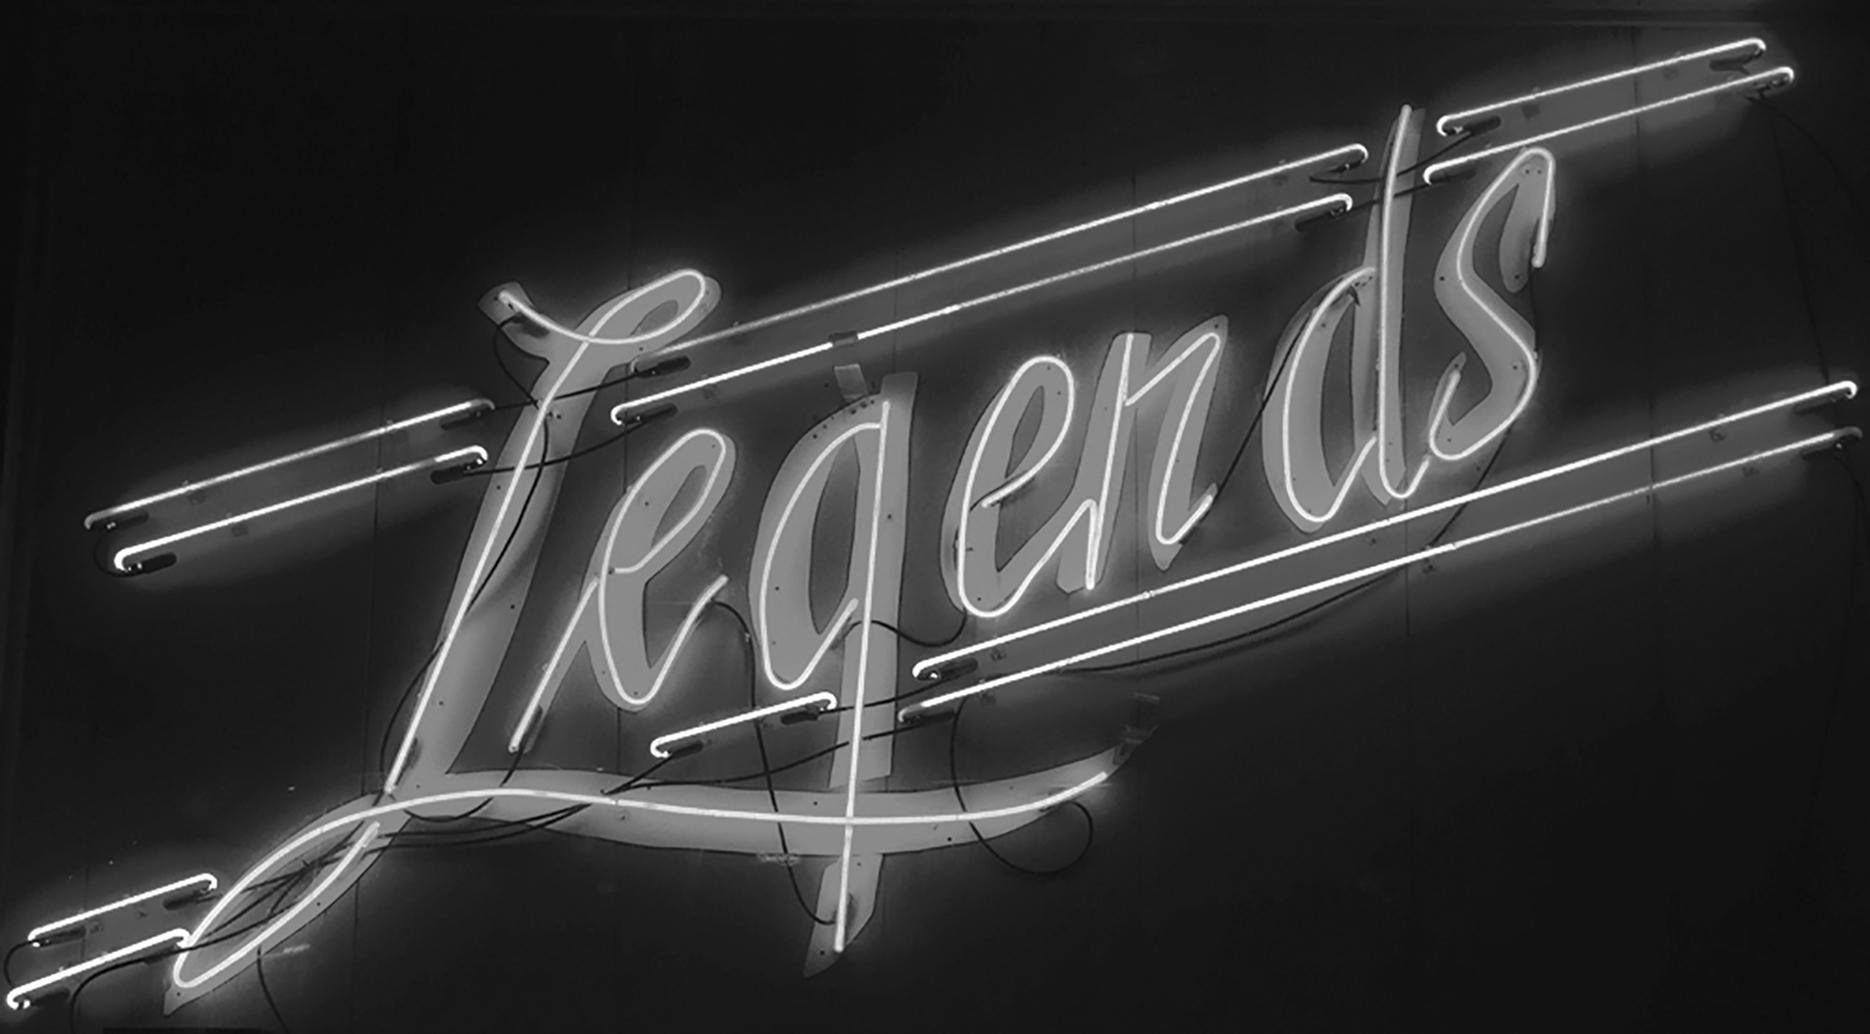 Legends_bw_DallasLinger